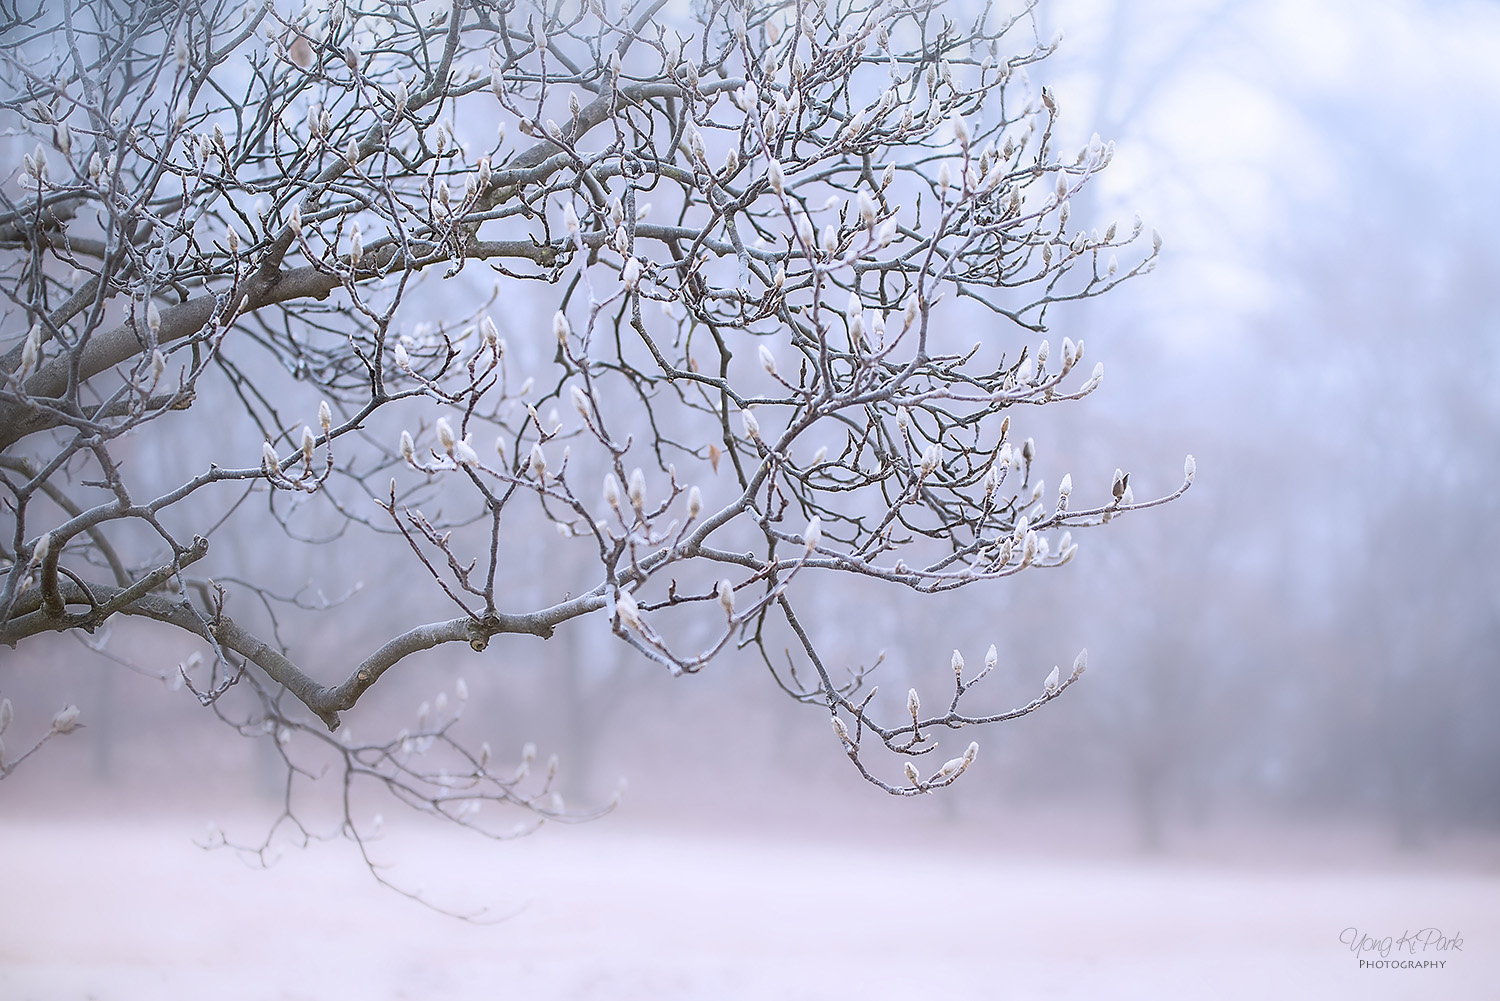 겨울 나무 – 4 많은 나무들은 일부의 동물들이 겨울잠을 자 듯 겨울이 되면 휴면상태에 들어간다. 휴면상태에서는 모든 것들이 느리게 진행되거나 일시적으로 멈추게 된다. PENTAX K-1, 70 mm, Tamron SP AF 70-200mm F2.8 Di LD [IF] Macro, f/3.5, 1/40 s, ISO100